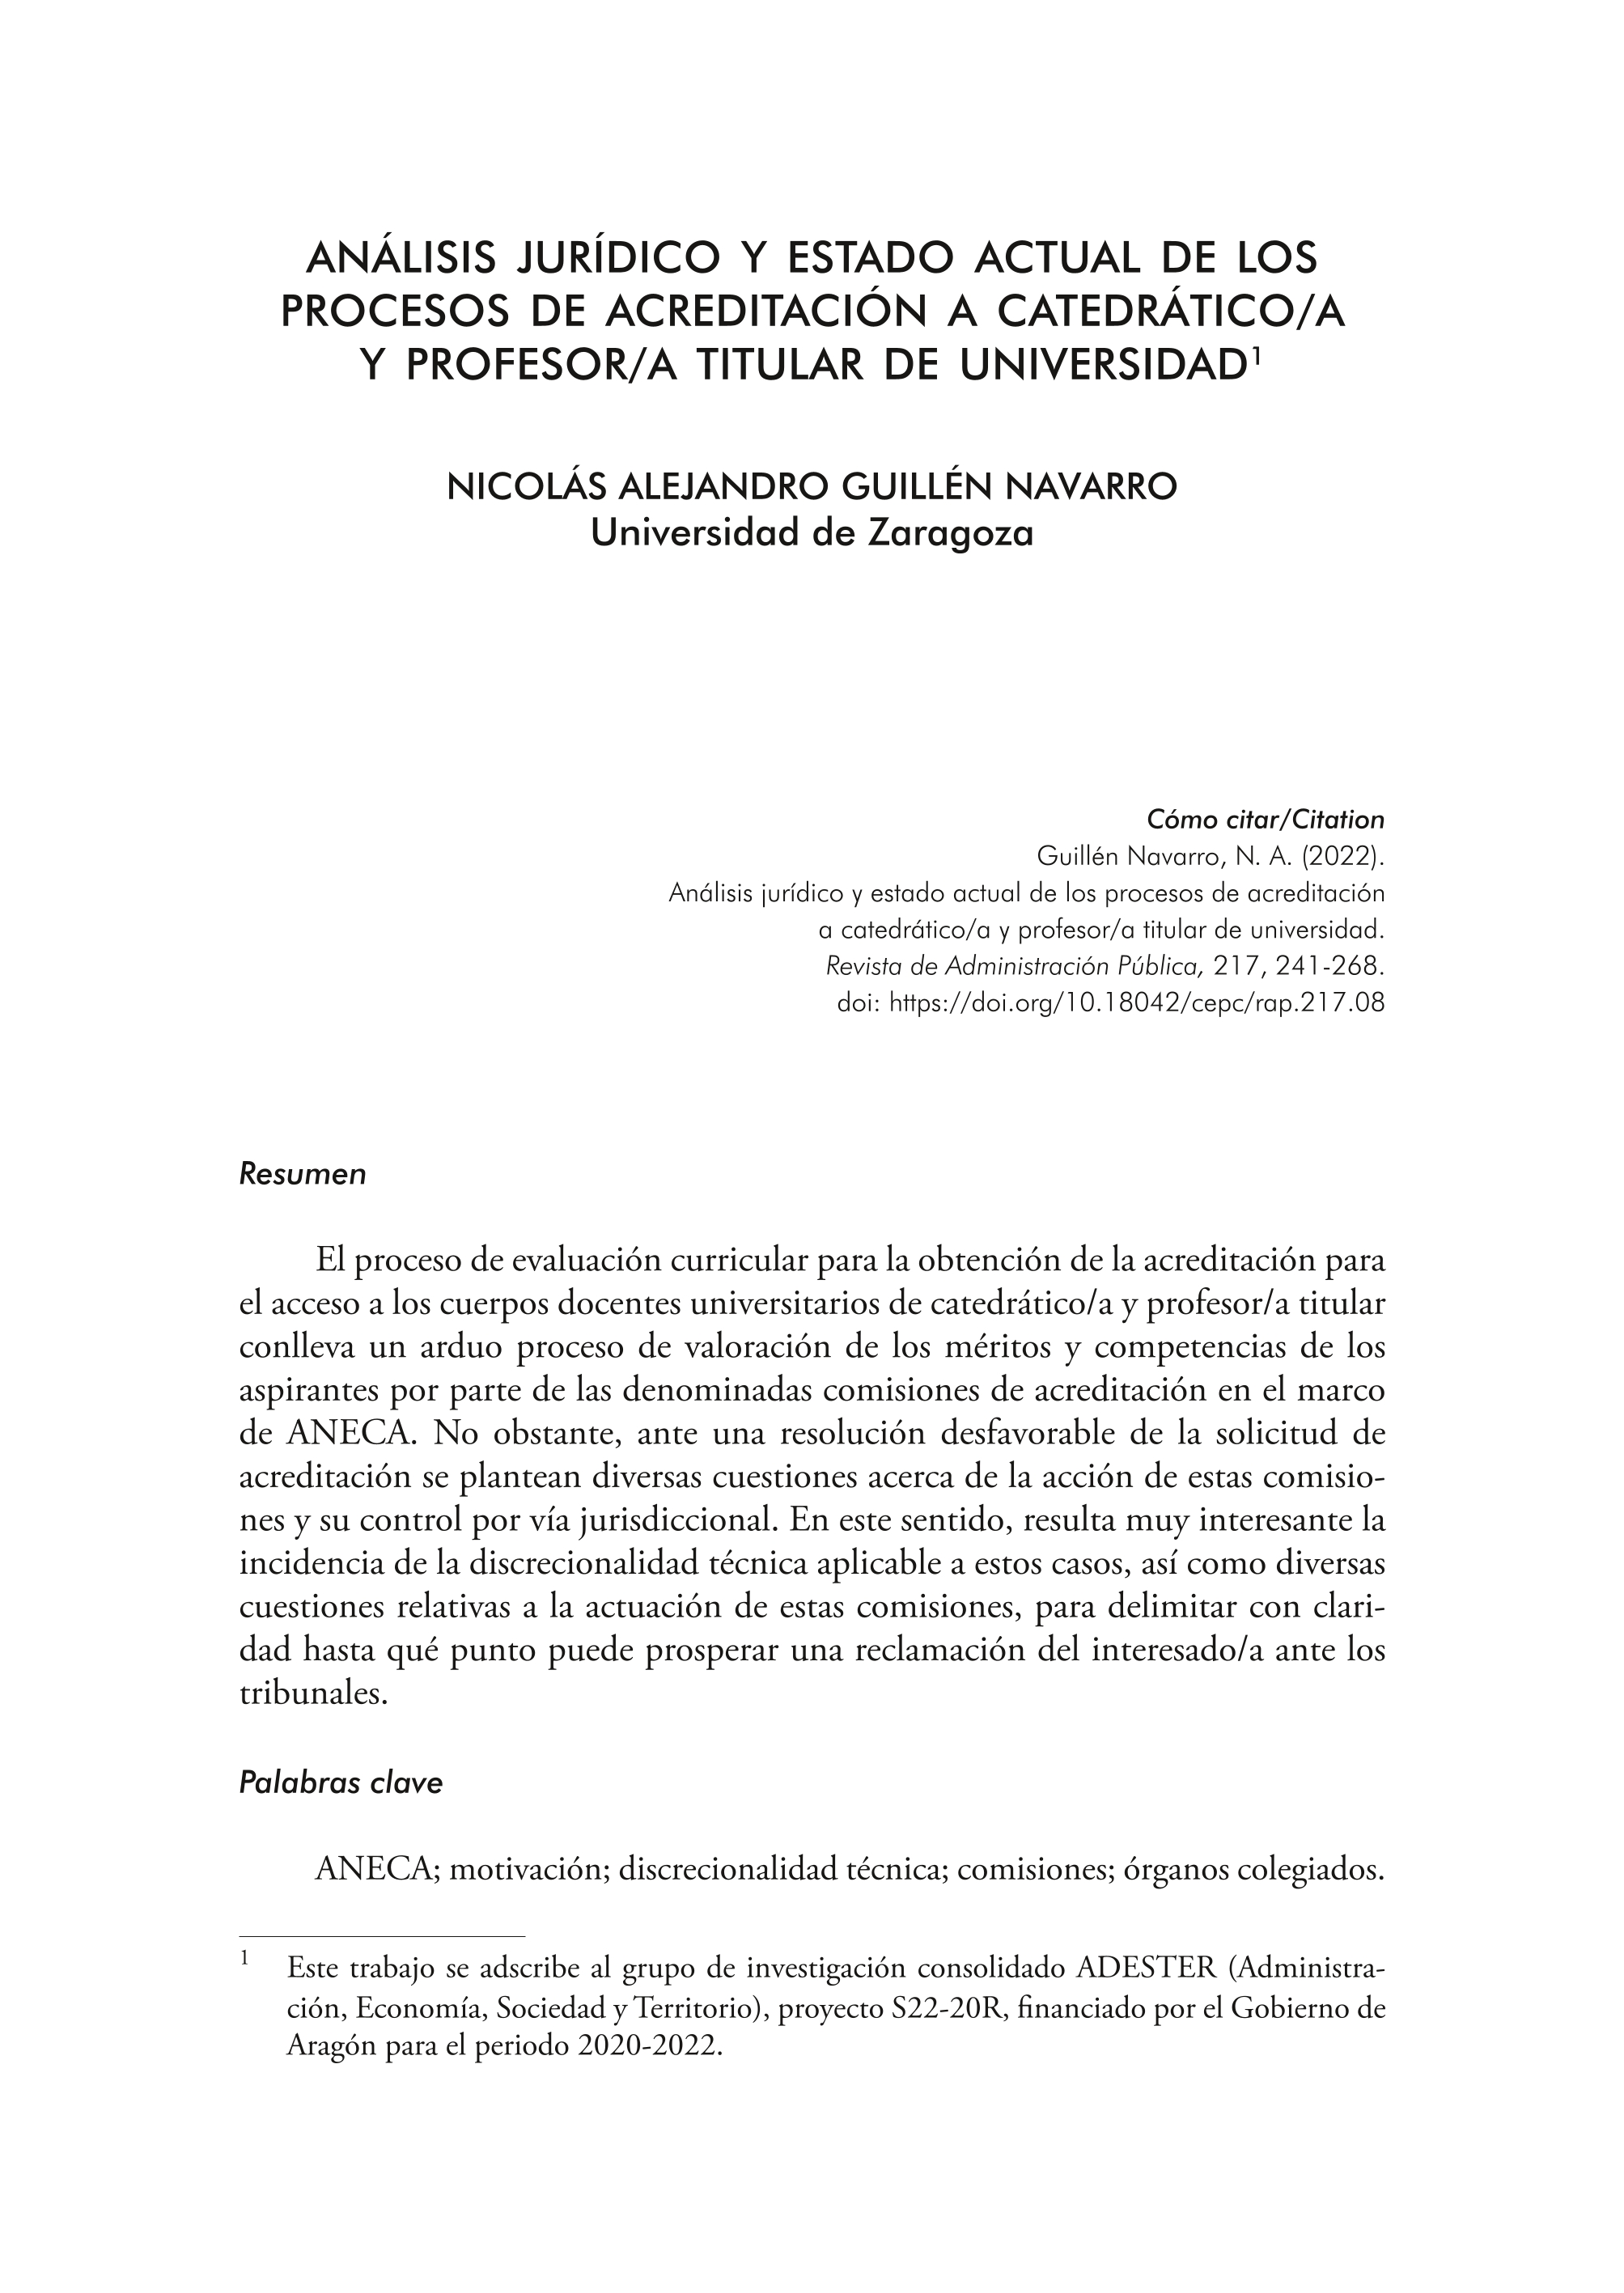 Análisis jurídico y estado actual de los procesos de acreditación a catedrático/a y profesor/a titular de universidad